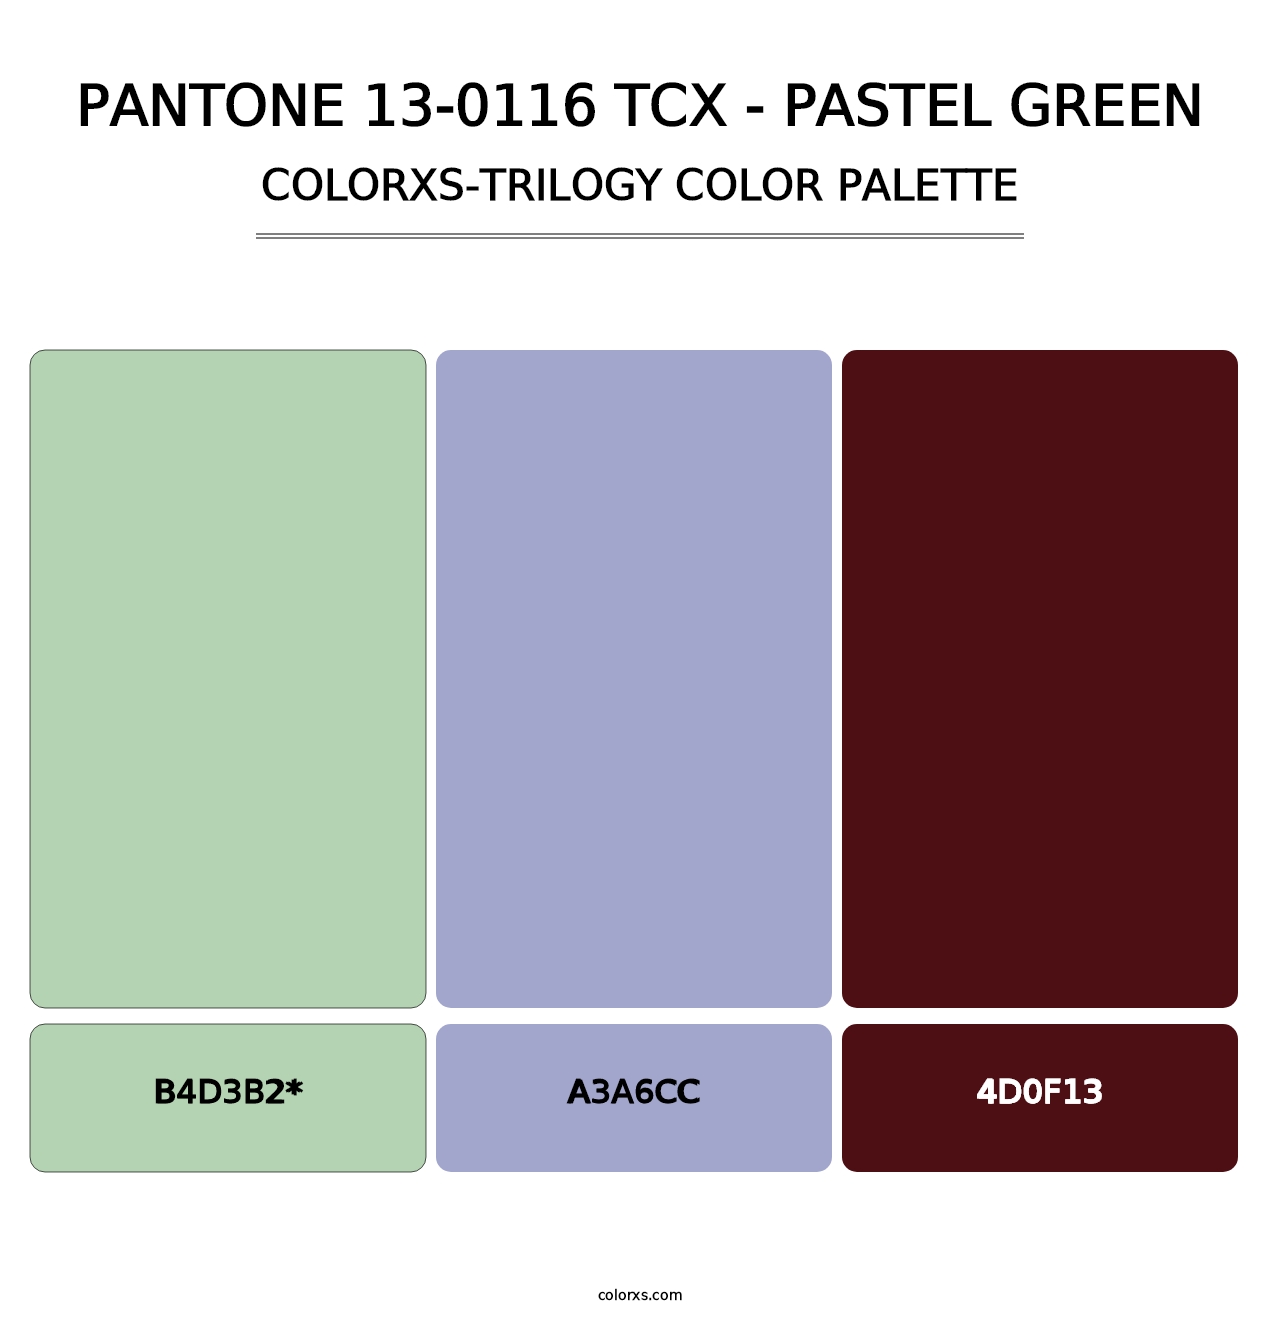 PANTONE 13-0116 TCX - Pastel Green - Colorxs Trilogy Palette